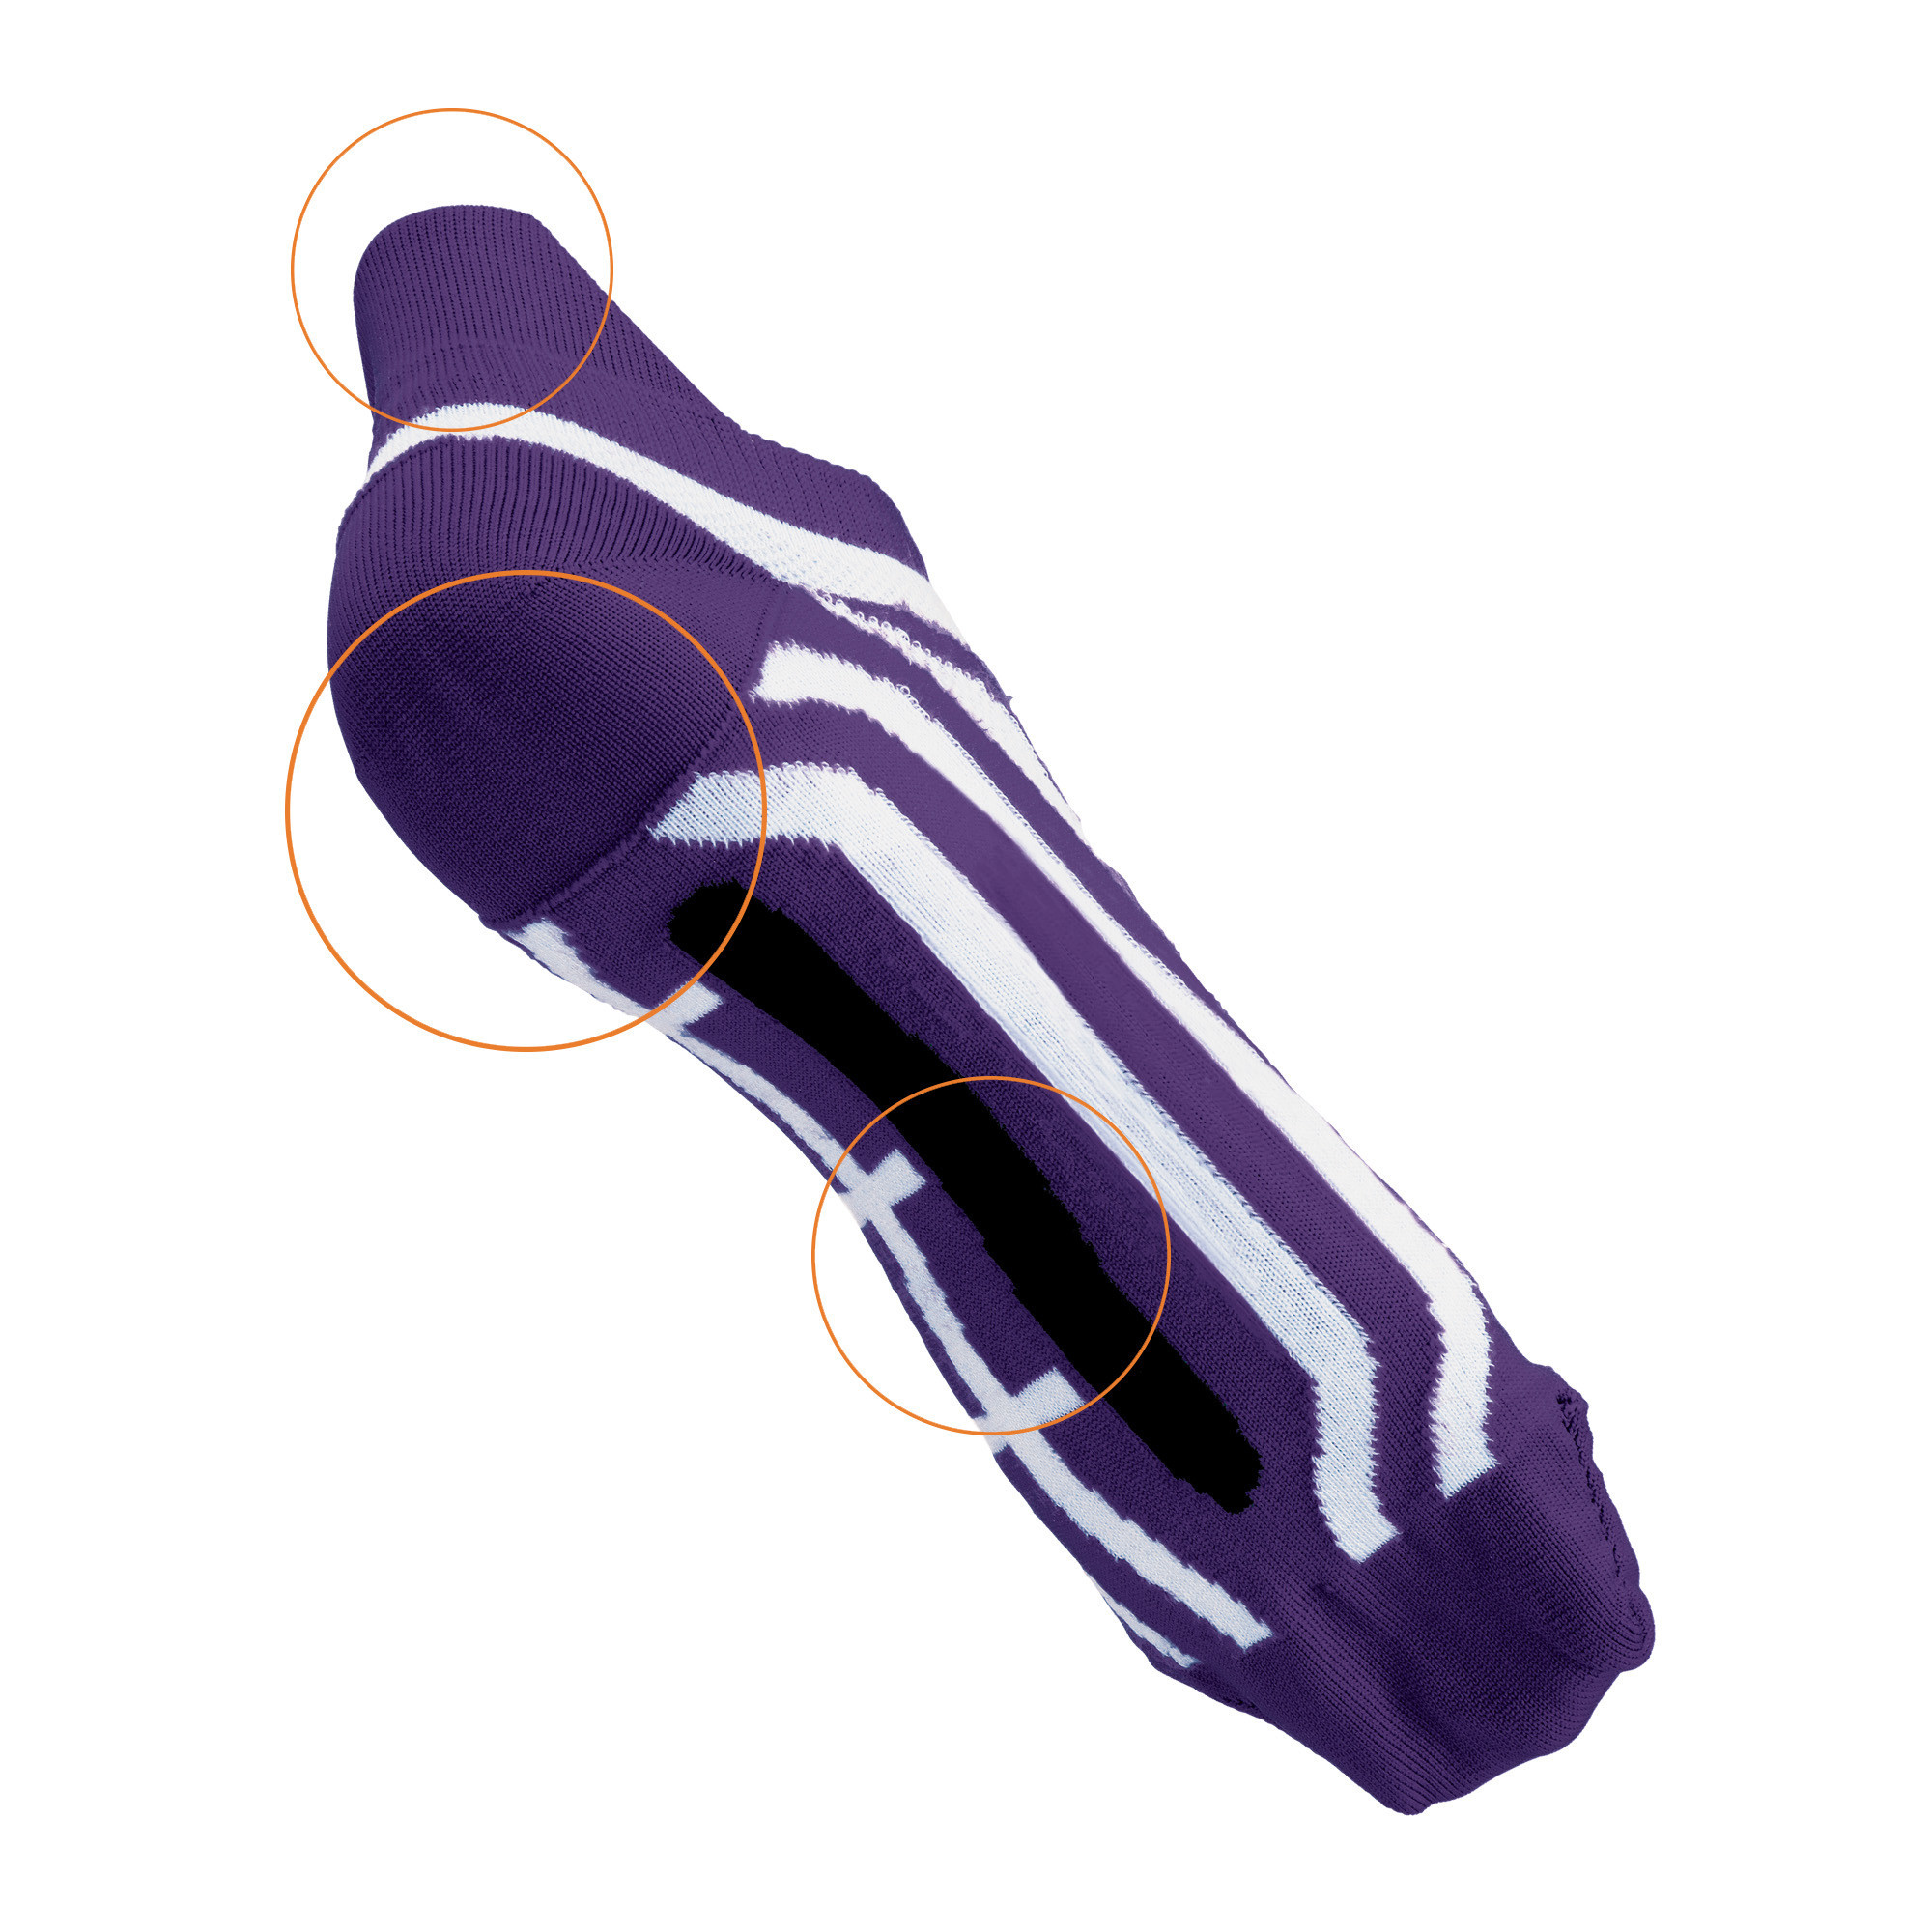 Chaussettes techniques Professional Taille Large violet